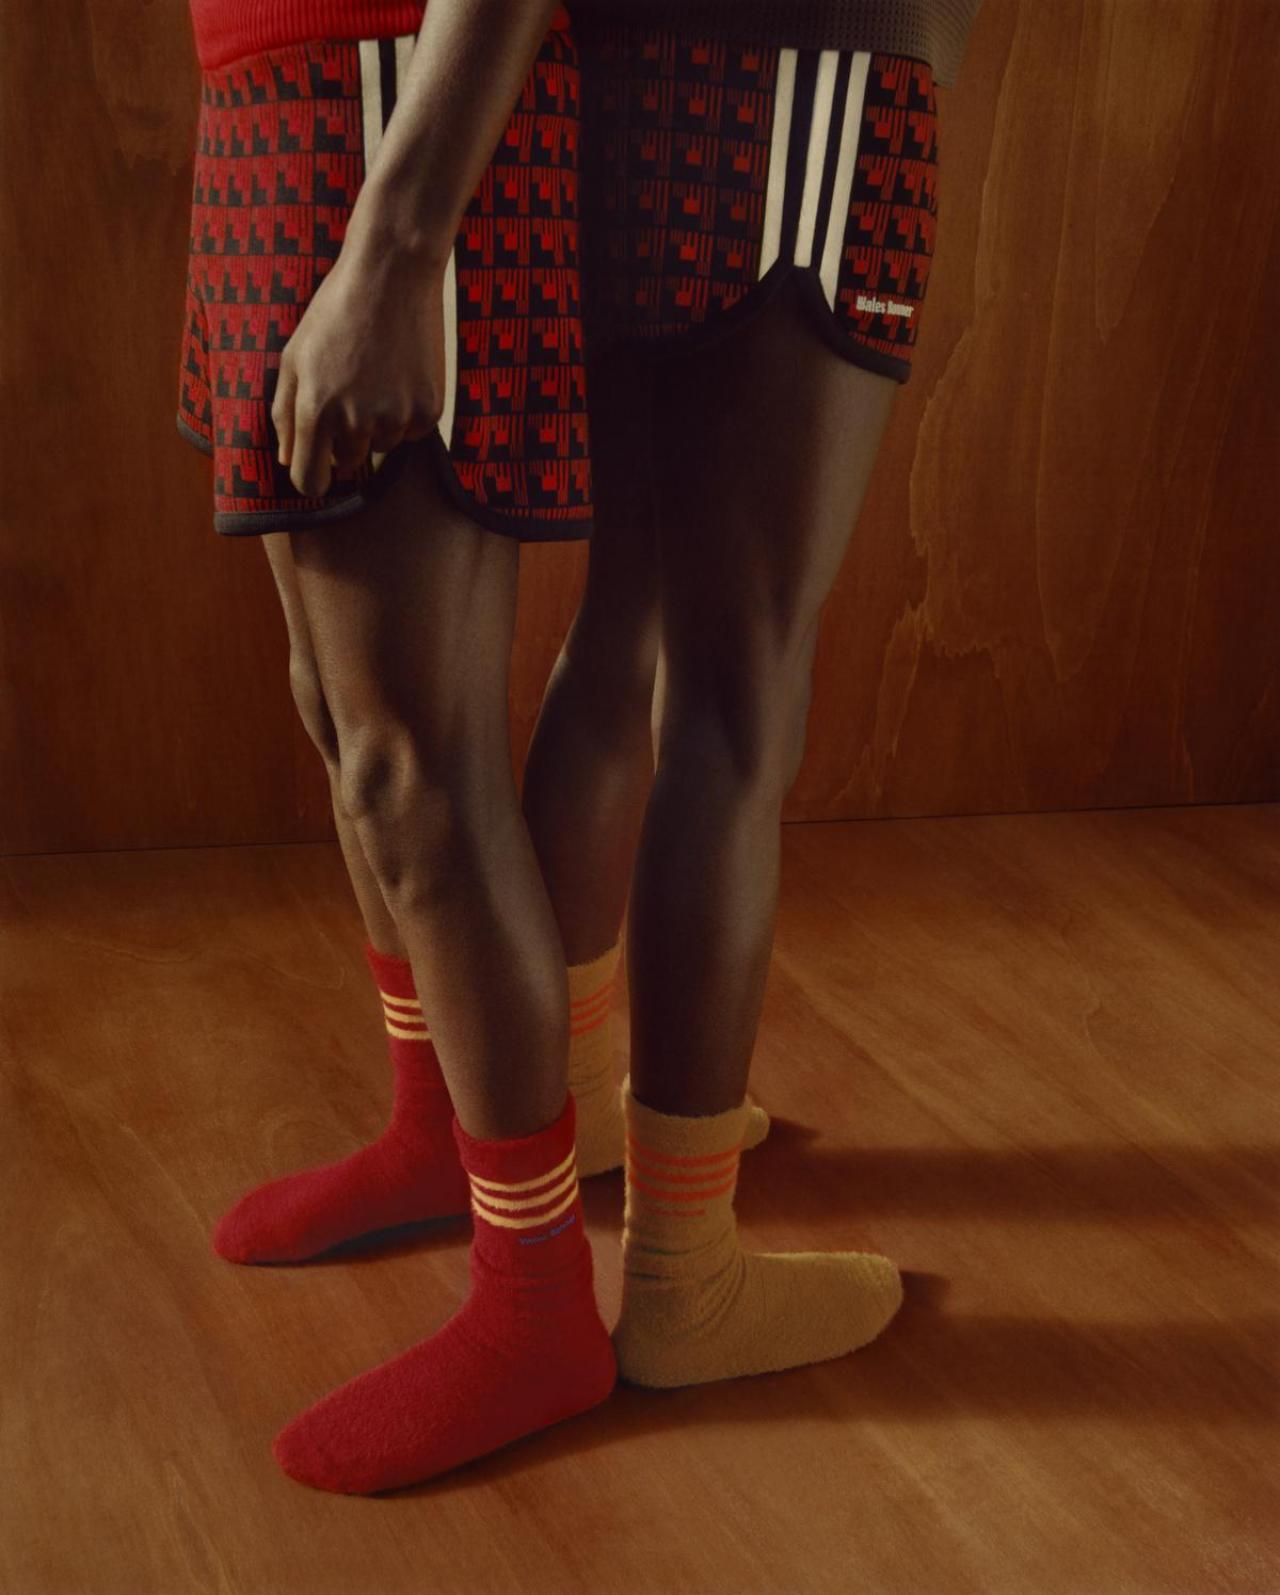 adidas Originals en Wales Bonner zijn opnieuw samengekomen voor een lente/zomer 2022 collectie. De collab heeft zich deze keer vooral gericht op de jaren 70 en 80.